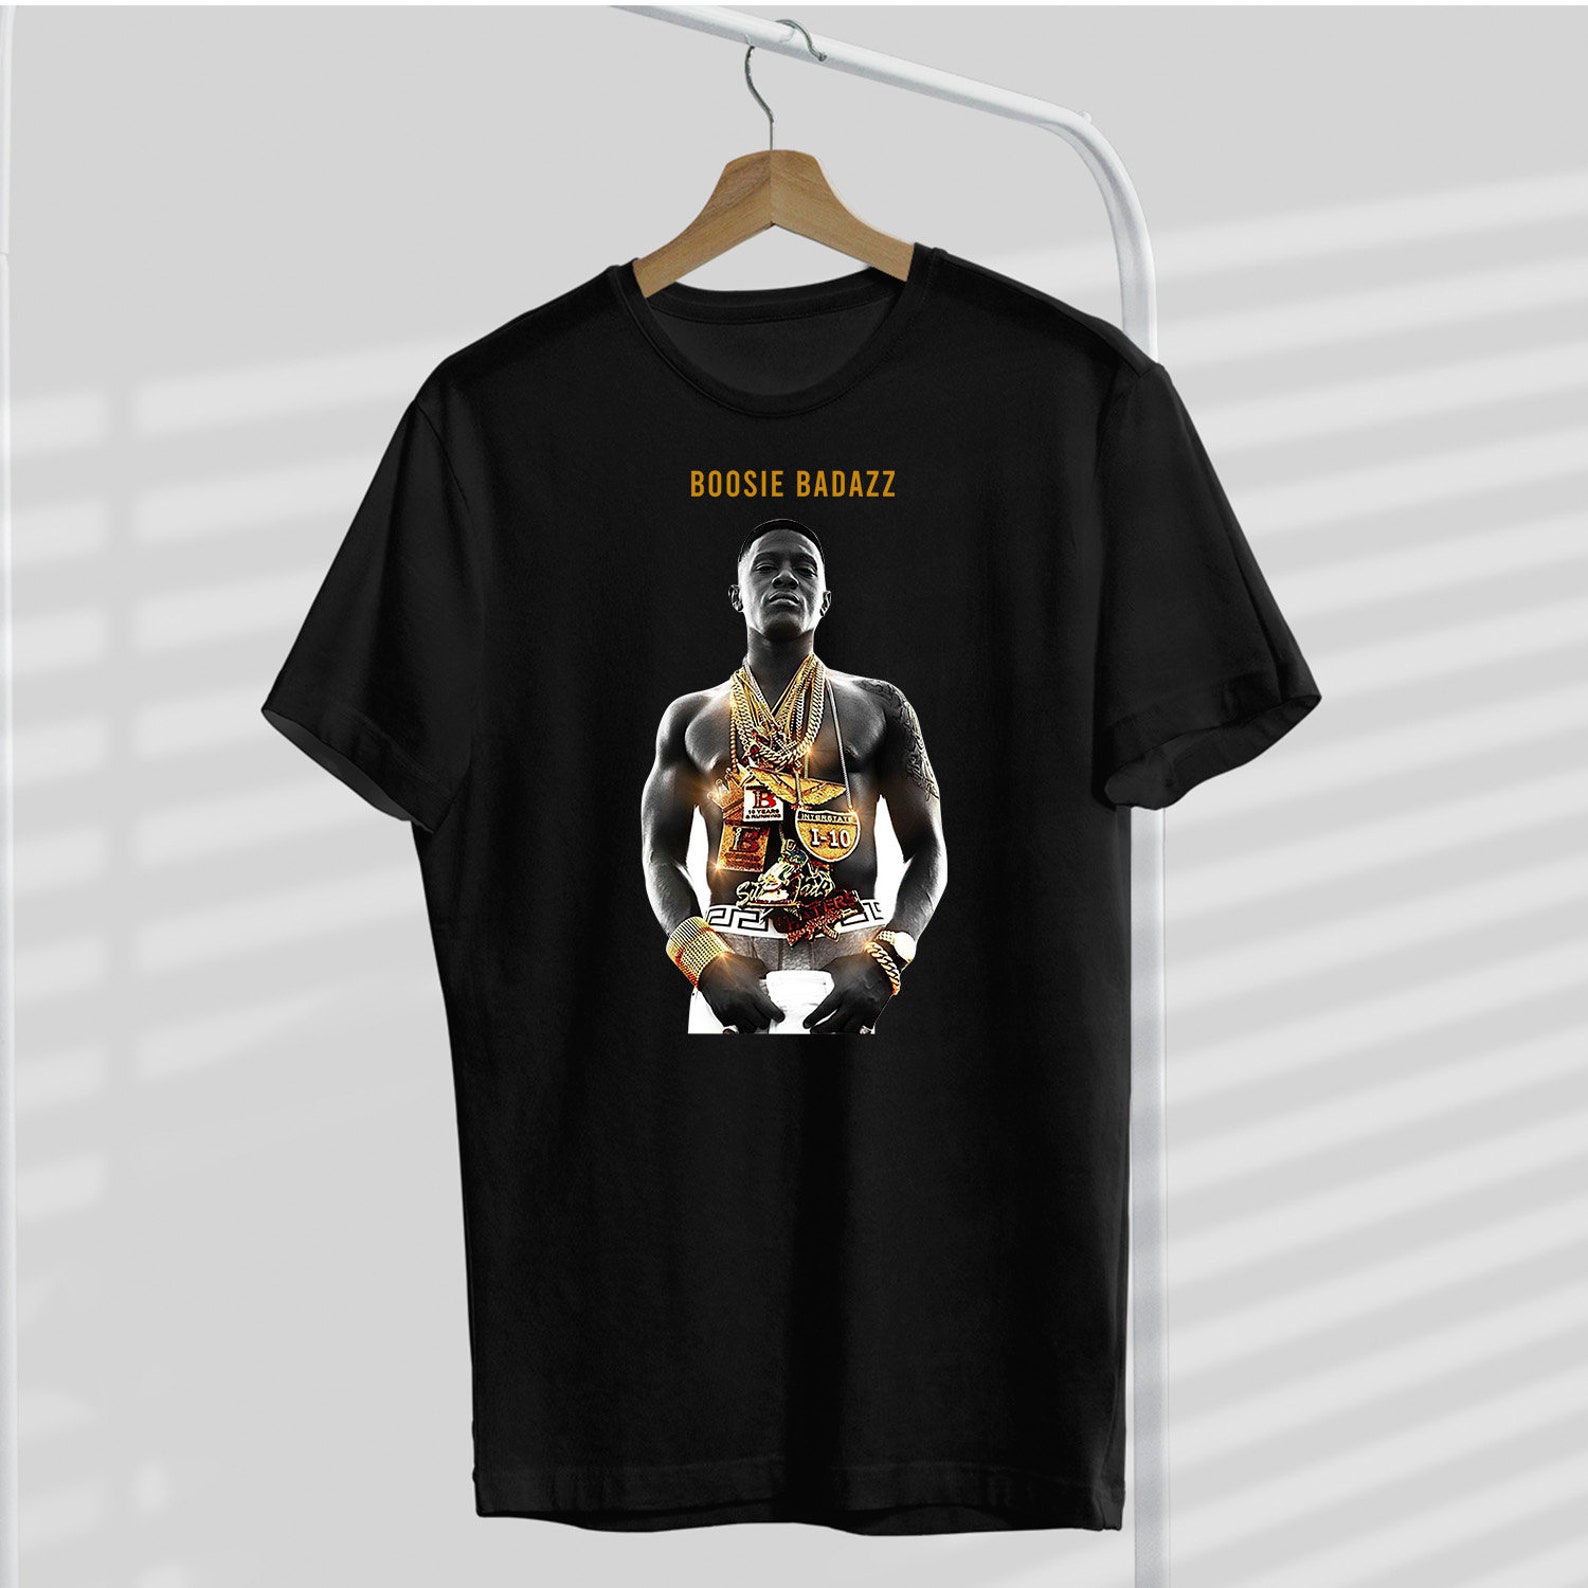 Men's Lil Boosie Rapper T-Shirt Boosie Badazz T-Shirt | Etsy